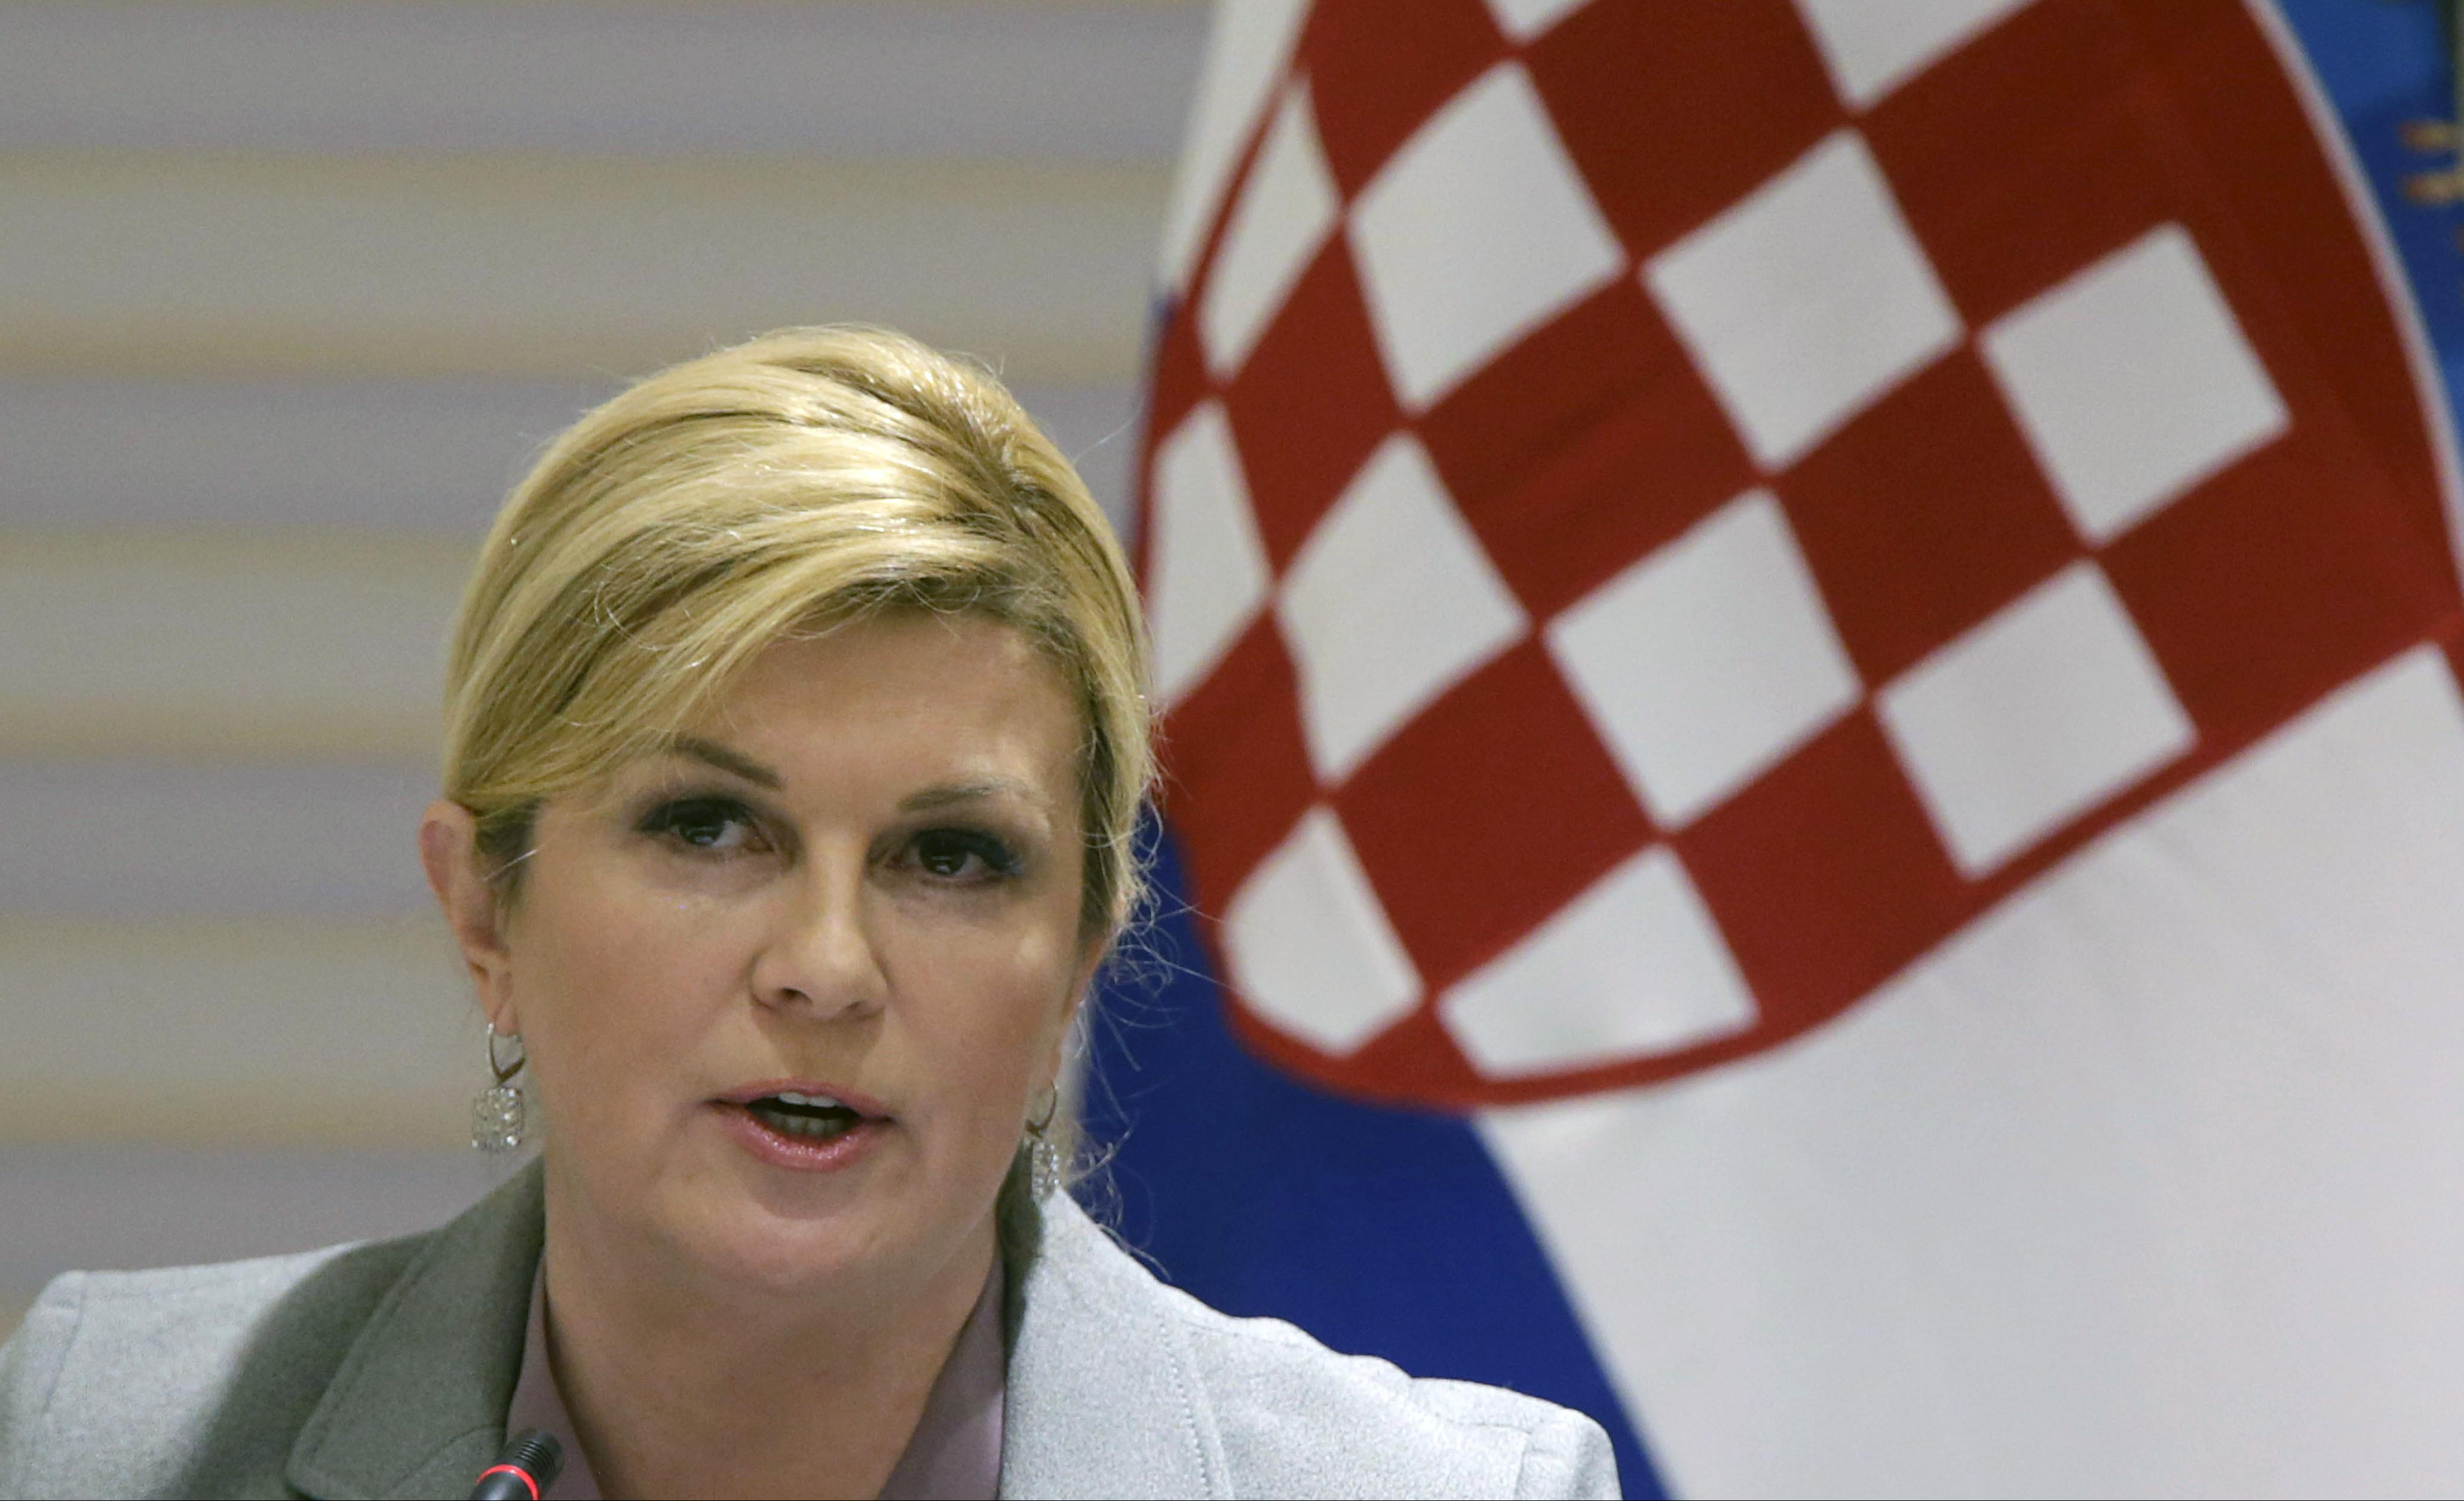 KOLINDA JE UVEK VOLELA KRIMOSE! Hrvatska predsednica ZAPRETILA DA ĆE OPET DA PEVA, NAROD BESAN ! (VIDEO)